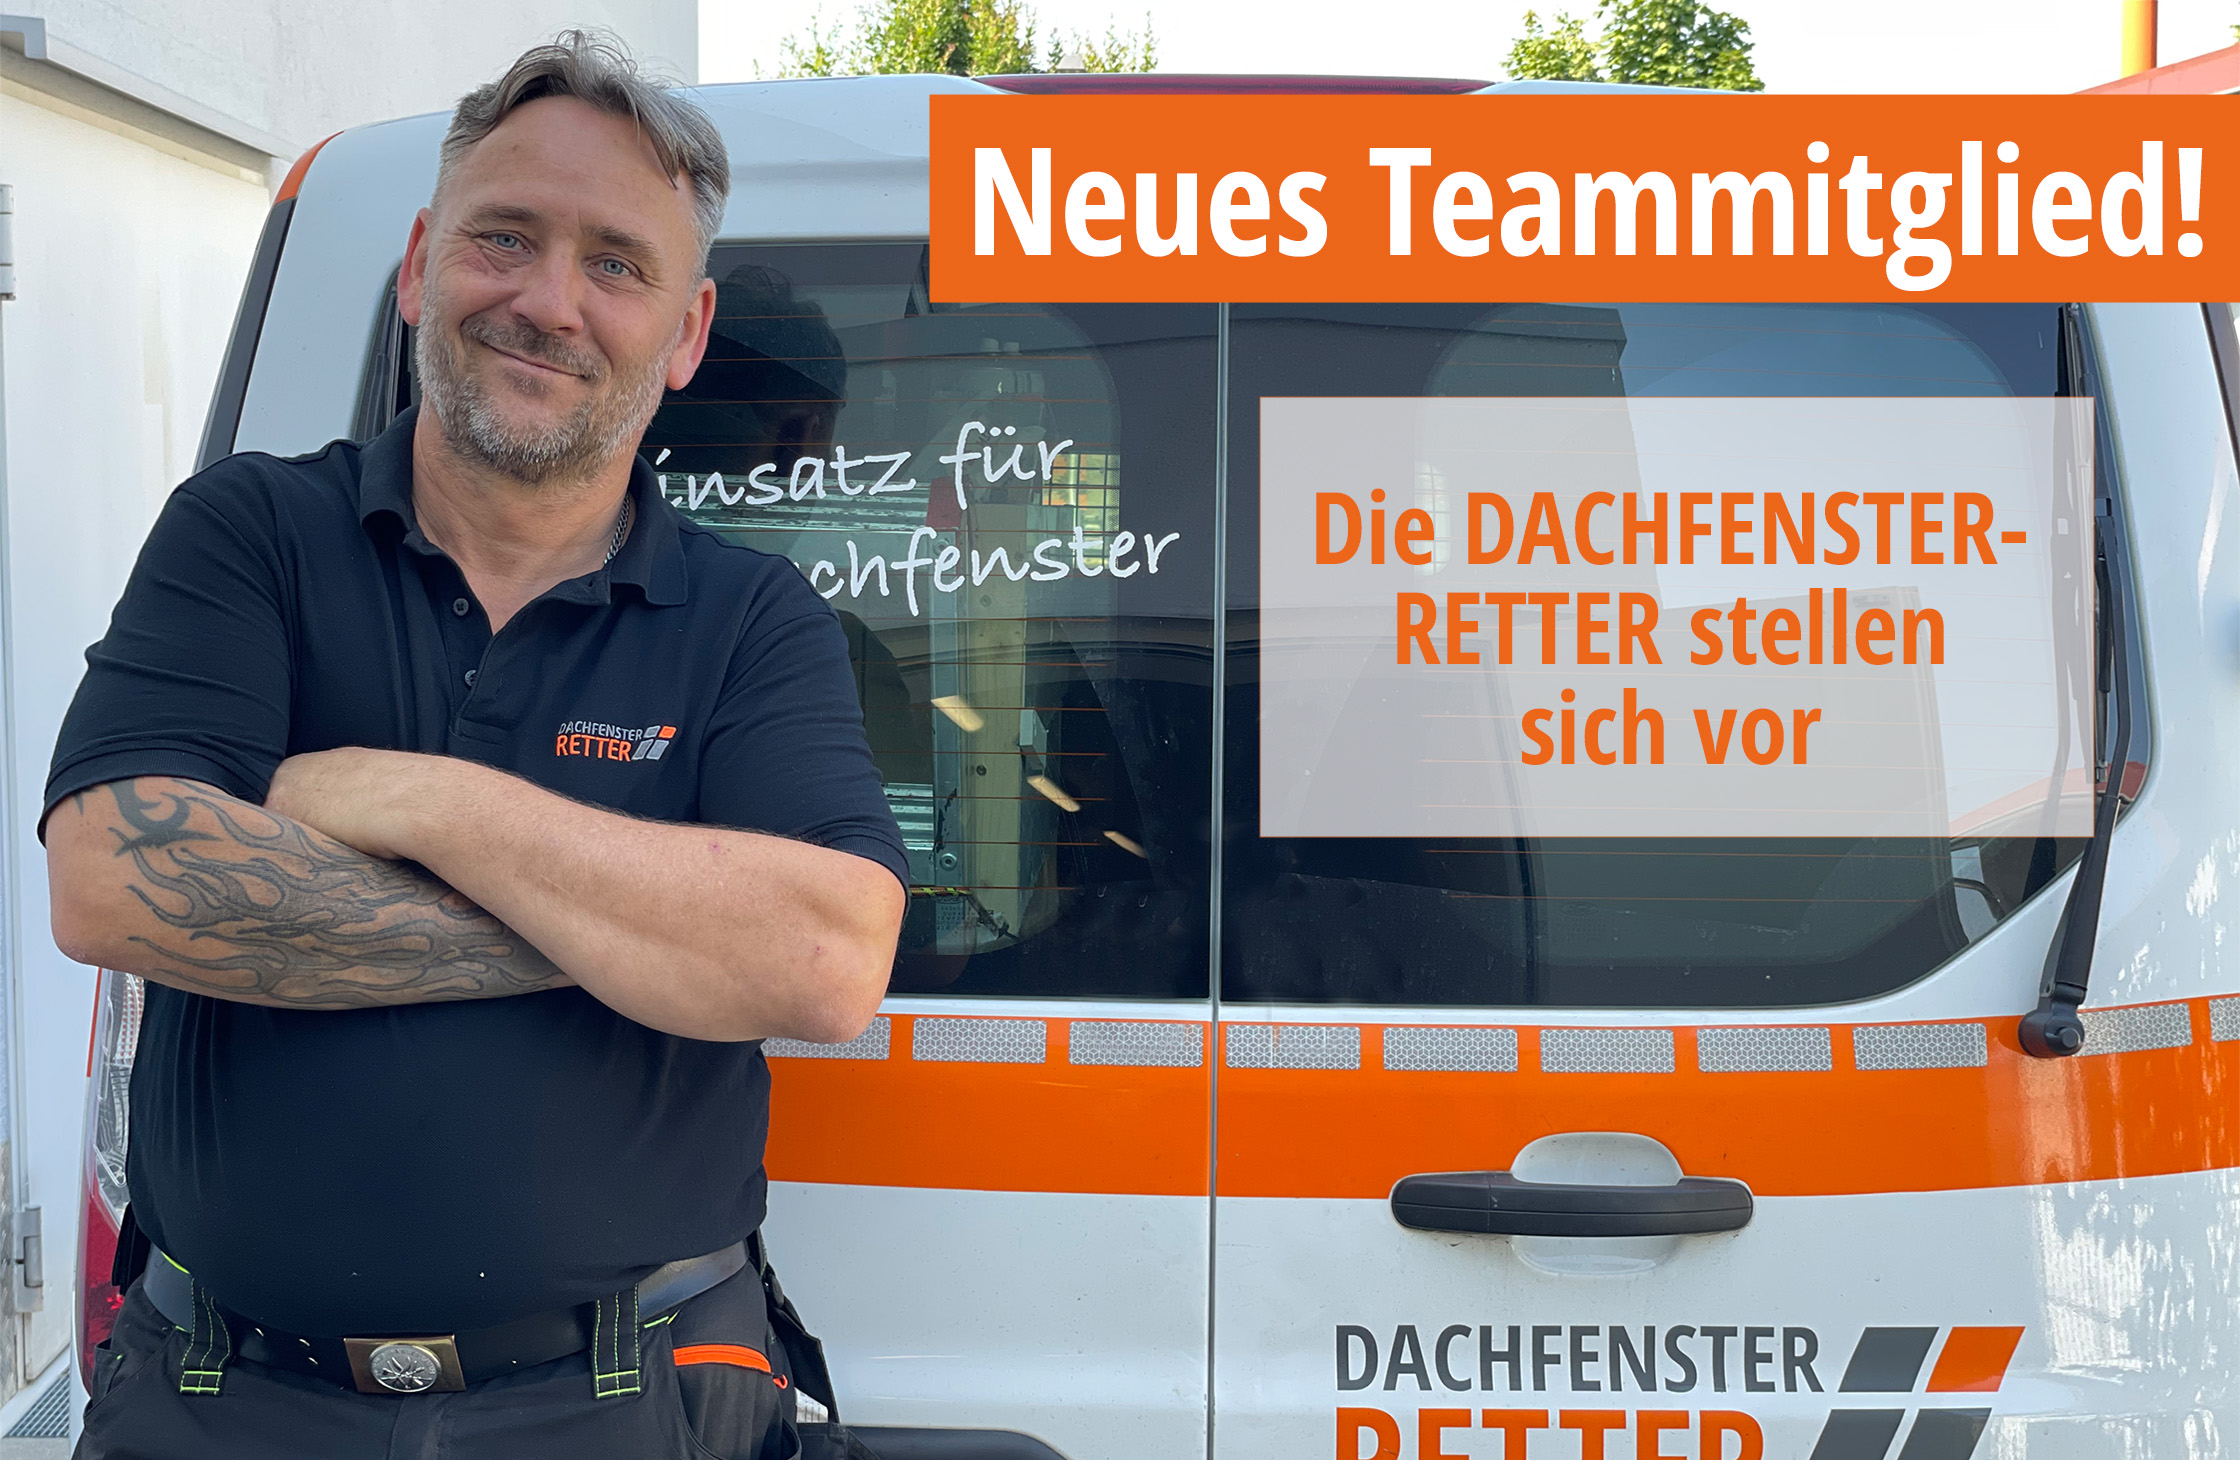 alt="Neues Teammitglied Mario Lang vor Dachfenster-Retter-Auto"